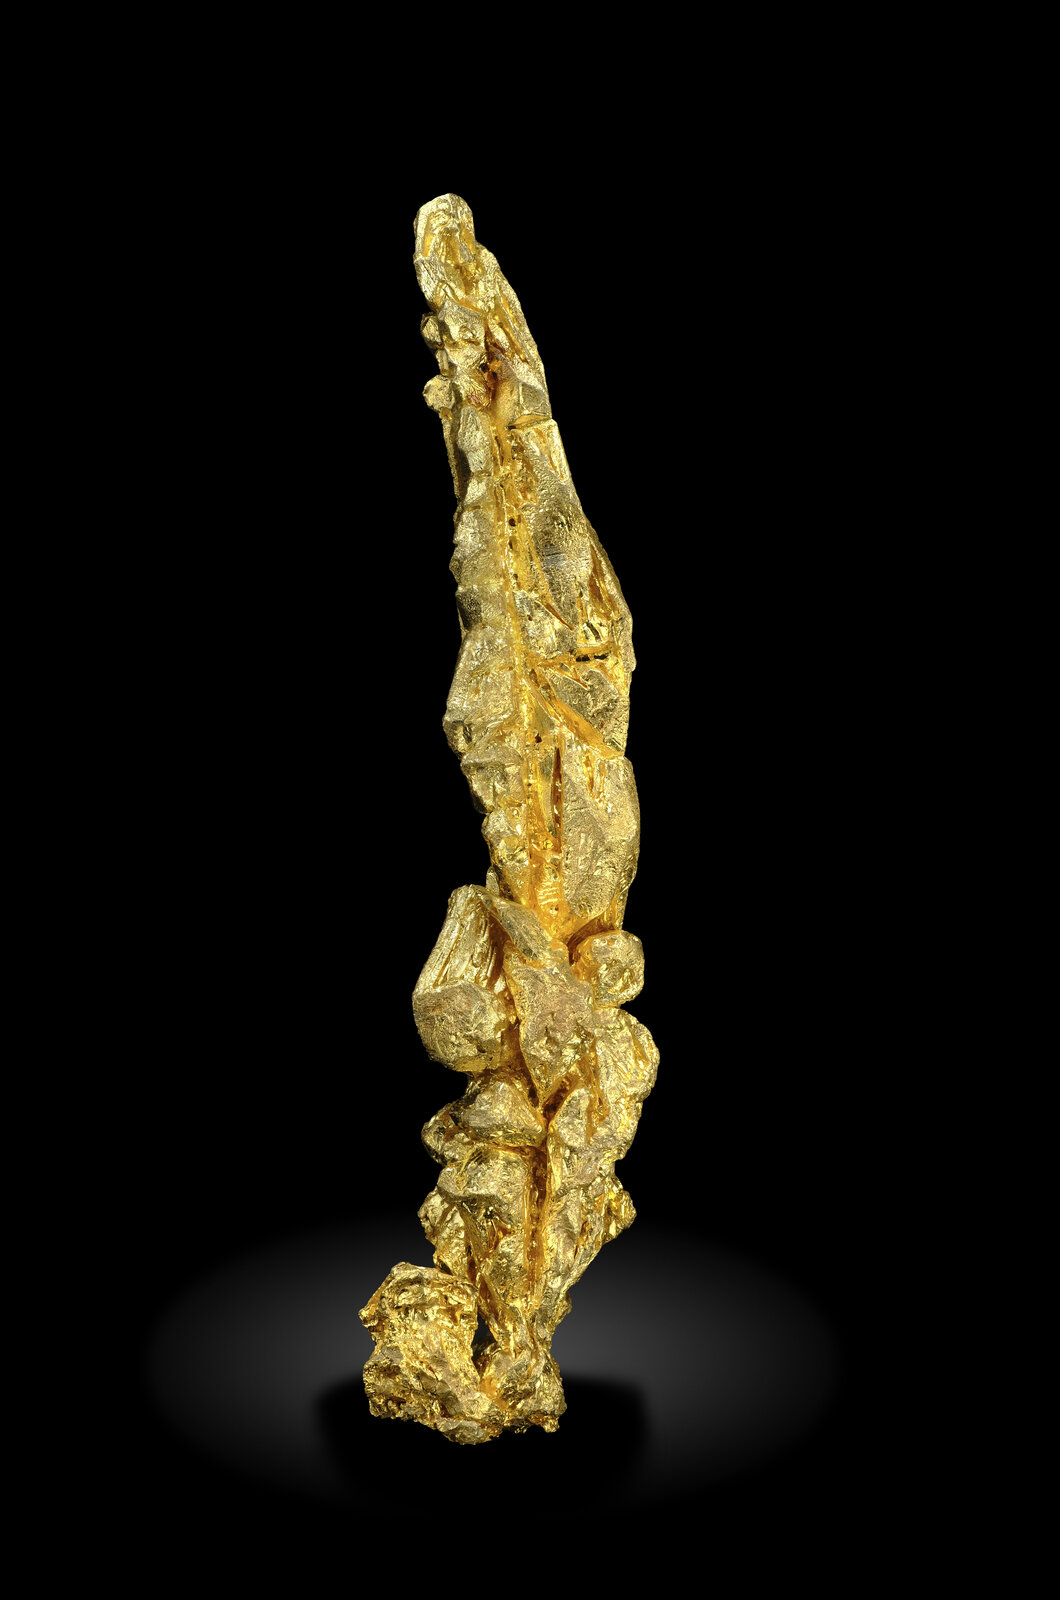 specimens/s_imagesAO4/Gold-ERF94AO4-7818r.jpg